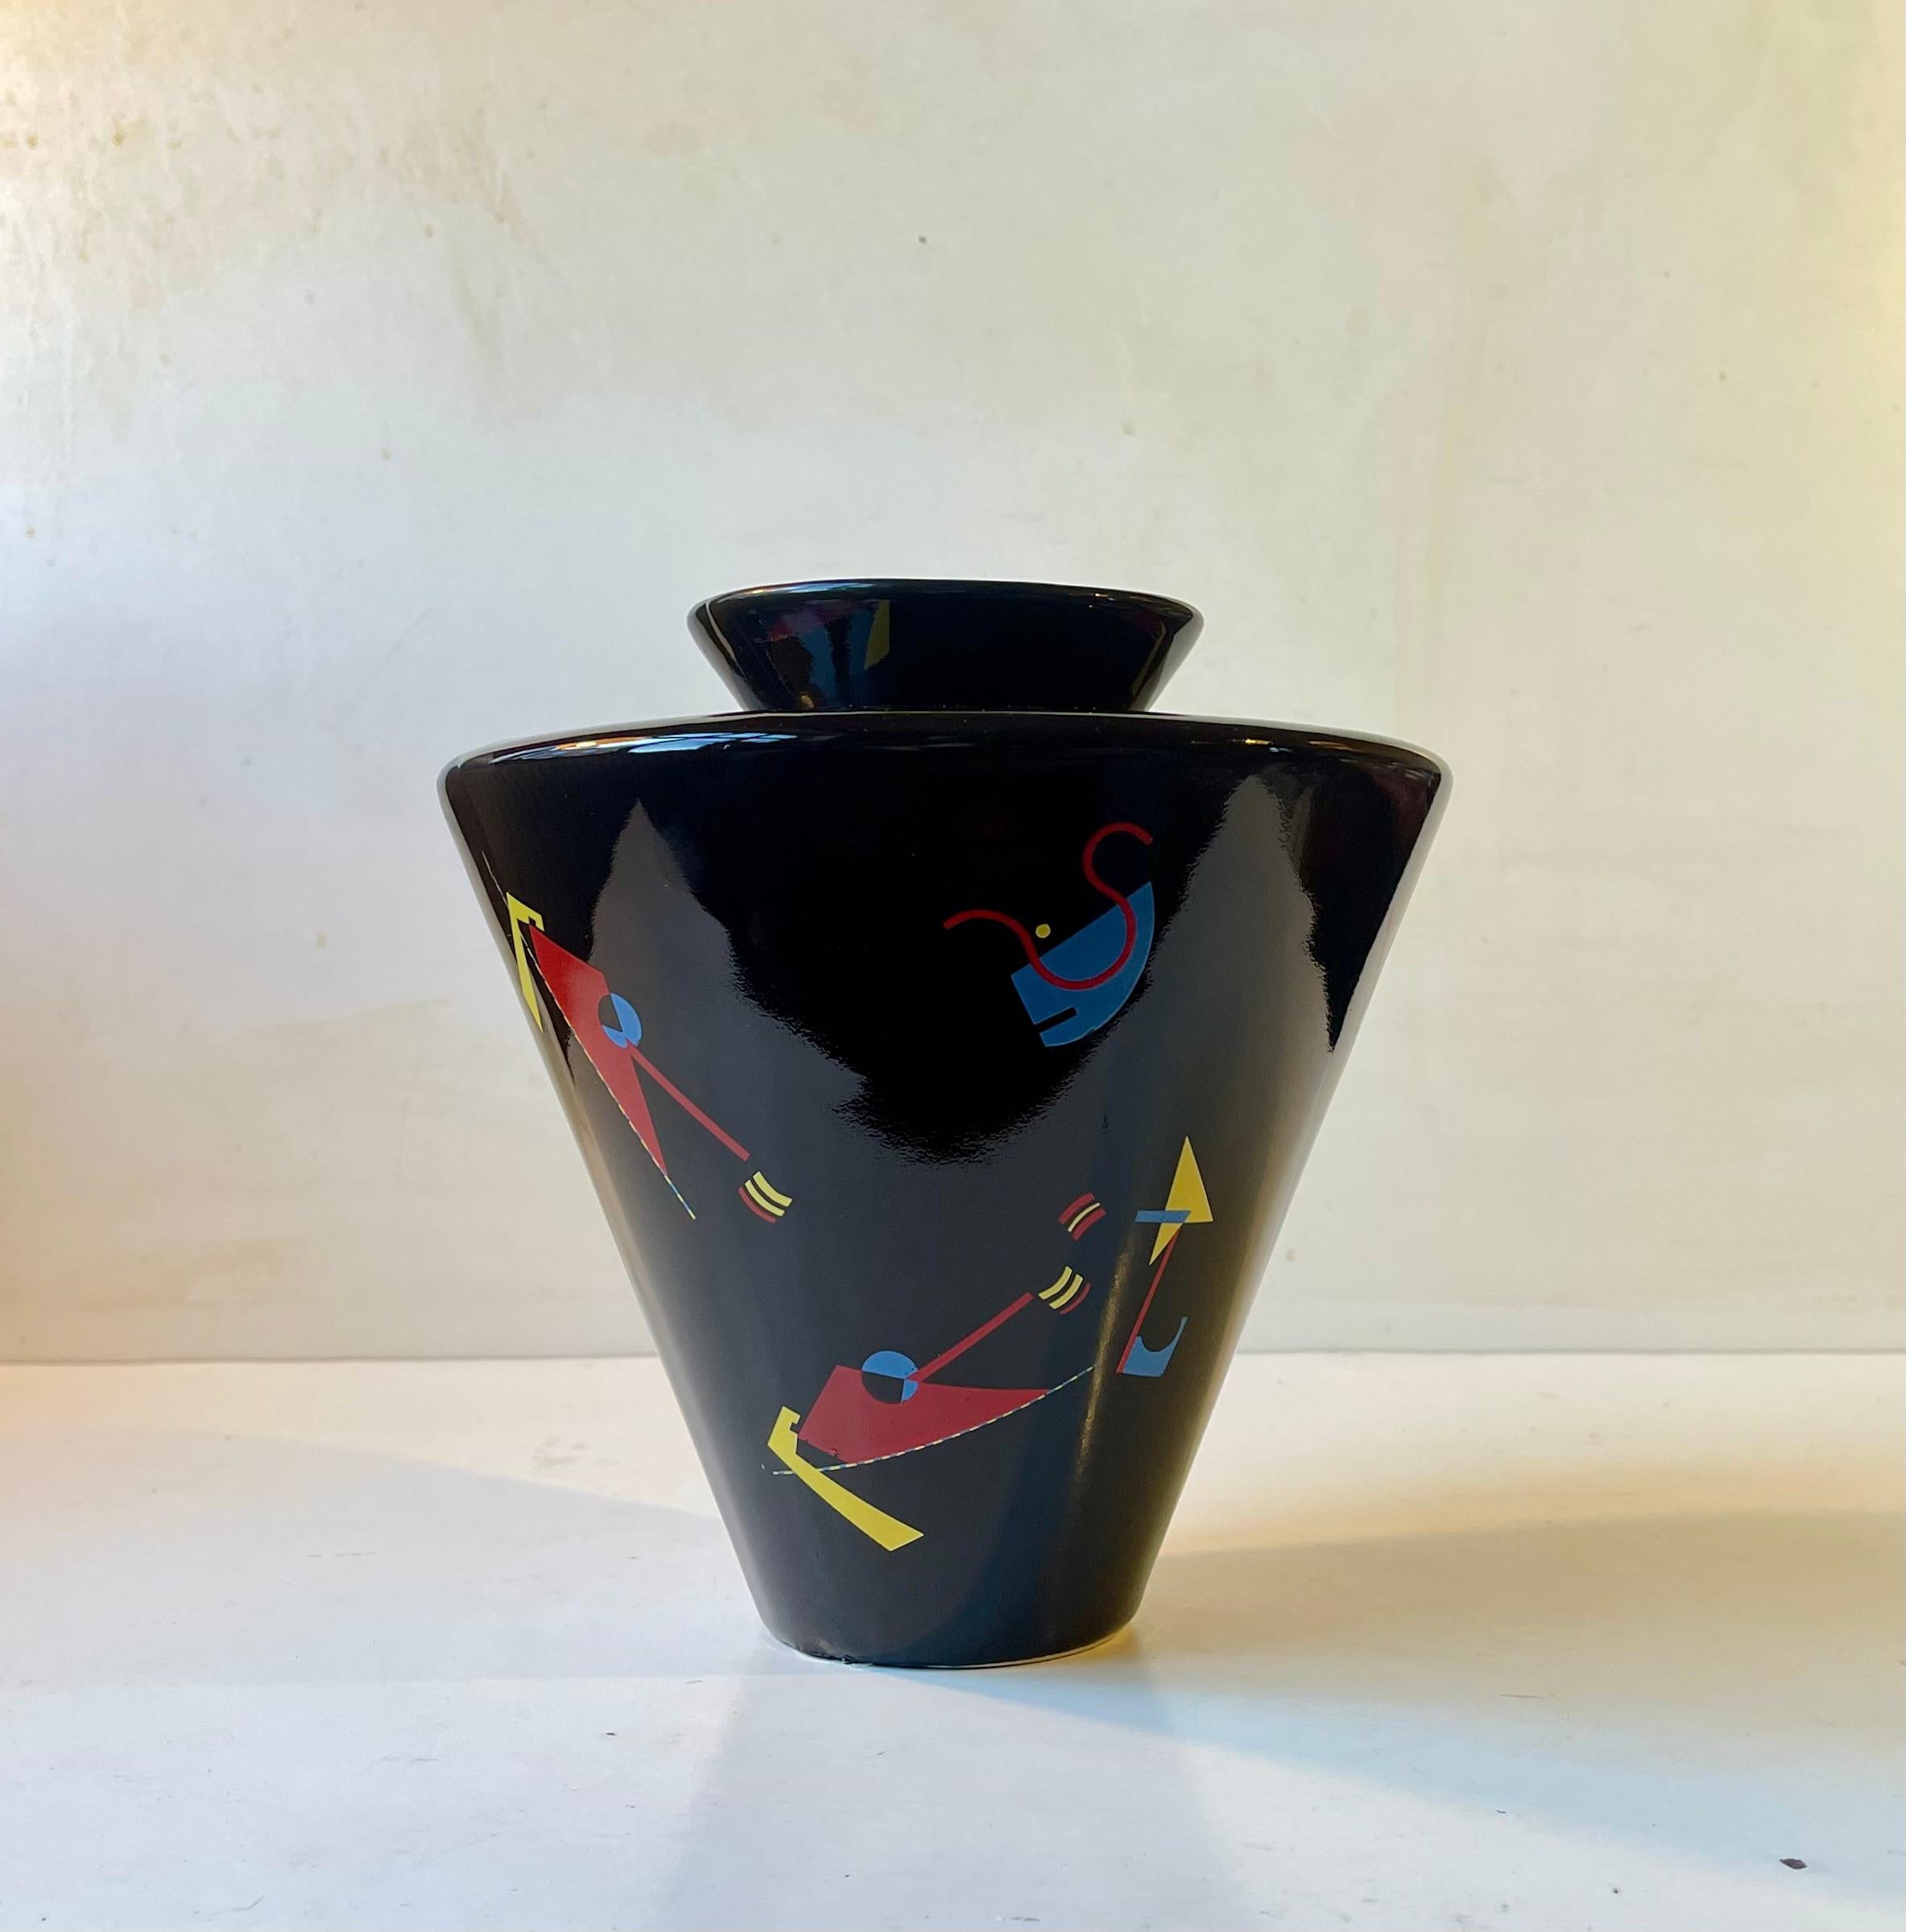 Exceptionnel vase en porcelaine noire émaillée. Elle présente une expression géométrique colorée dans le style du parrain de l'expressionnisme abstrait, Wassily Kardinski. La palette de couleurs, en revanche, est plus proche de Joan Miro. Cette